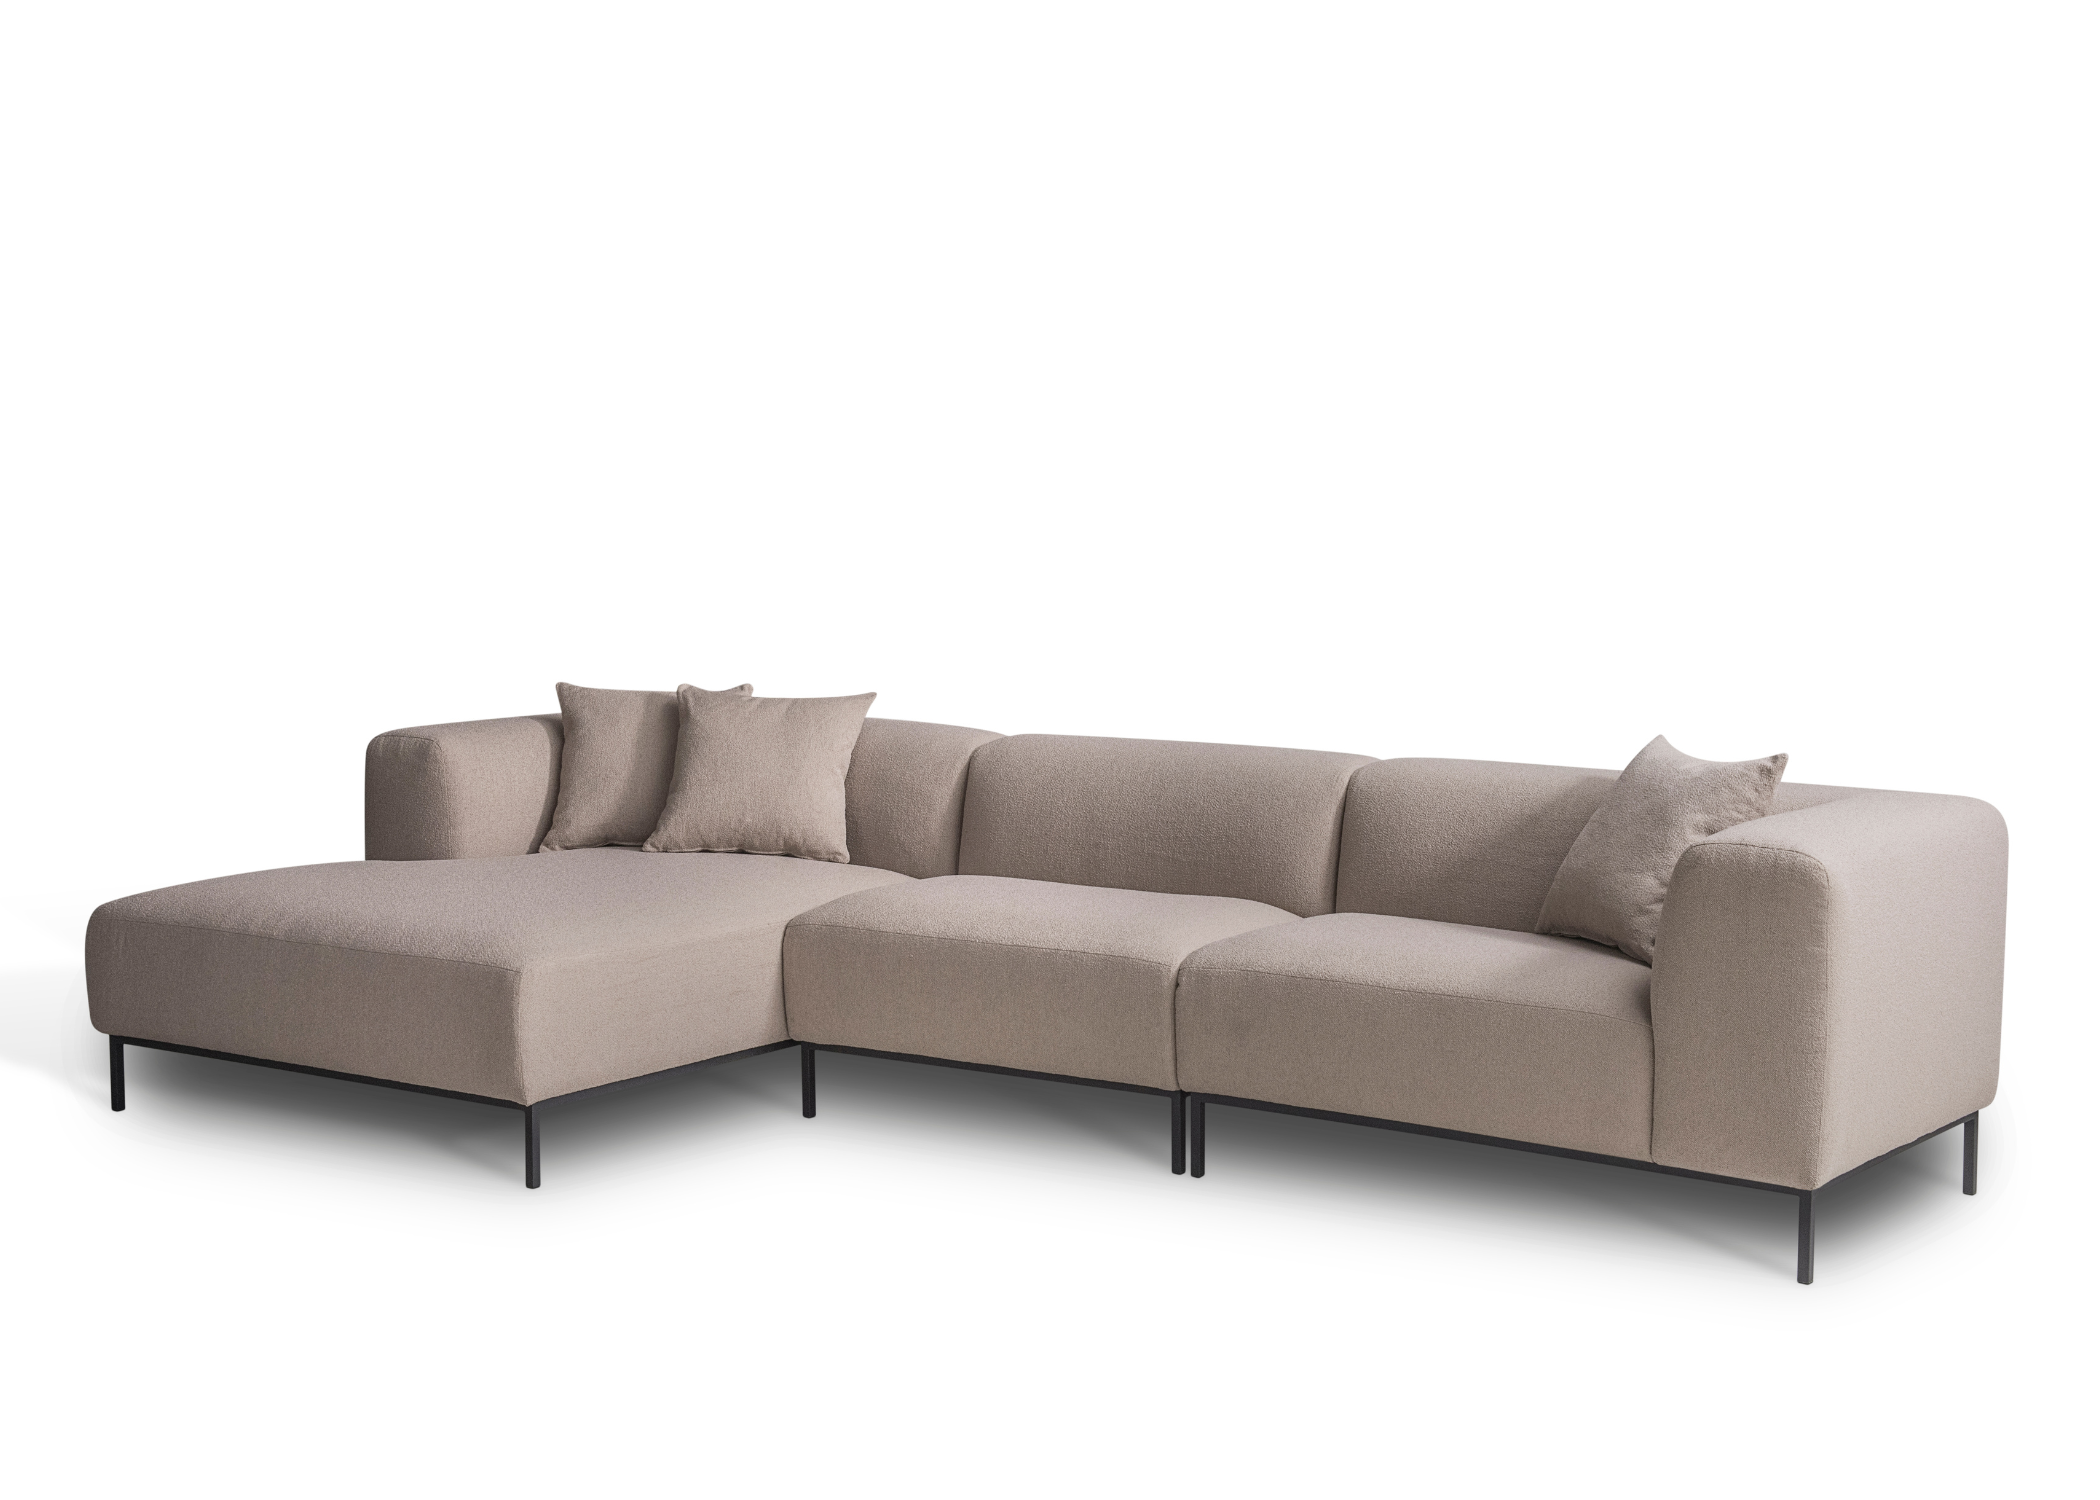 Sofá Iza design moderno e confortável.